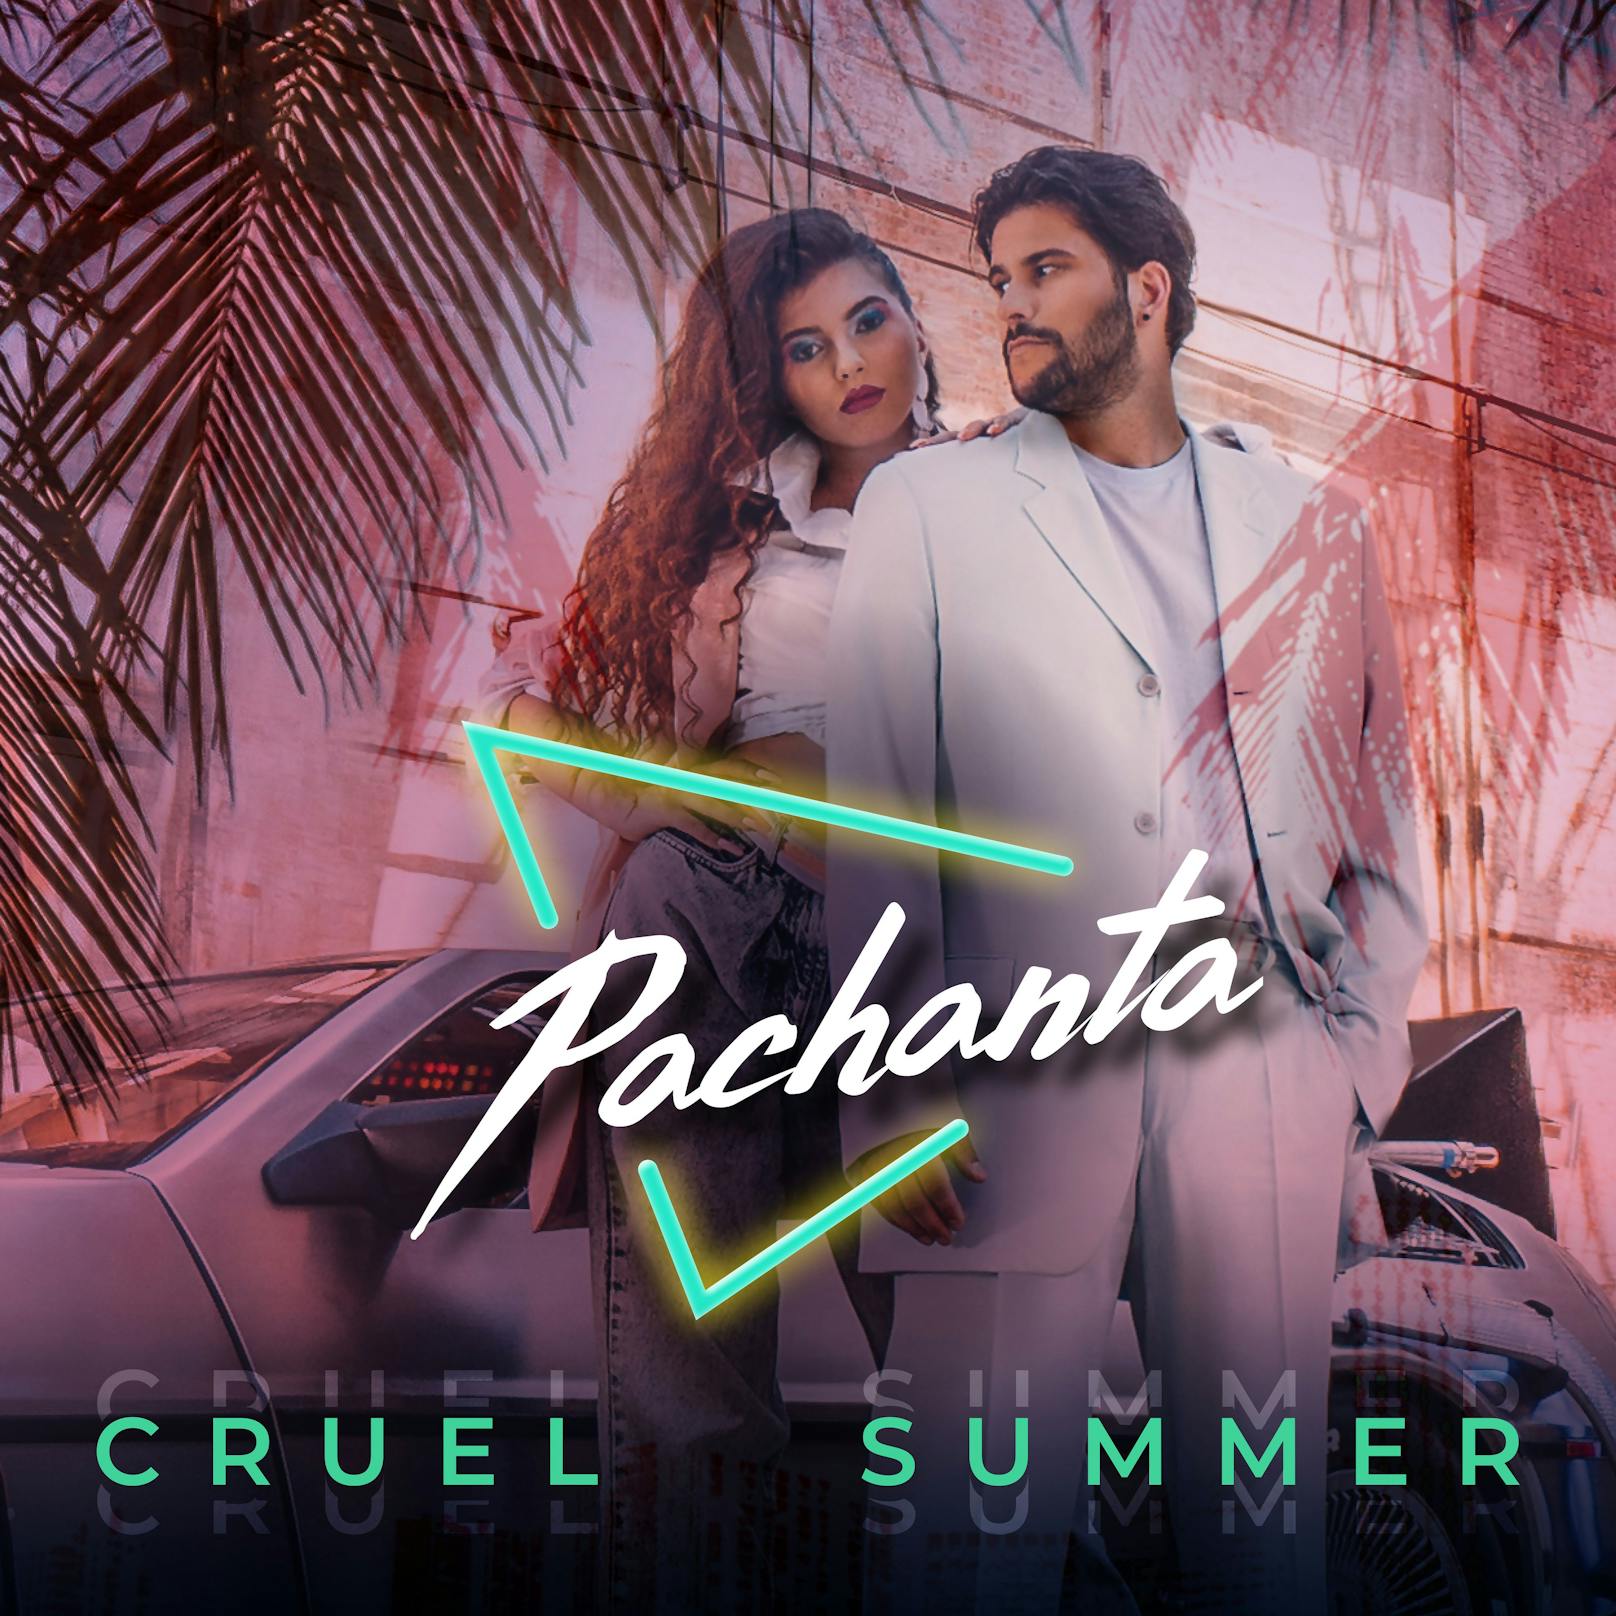 &nbsp;Das Cover zur ersten gemeinsamen Single "Cruel Summer" von Pachanta